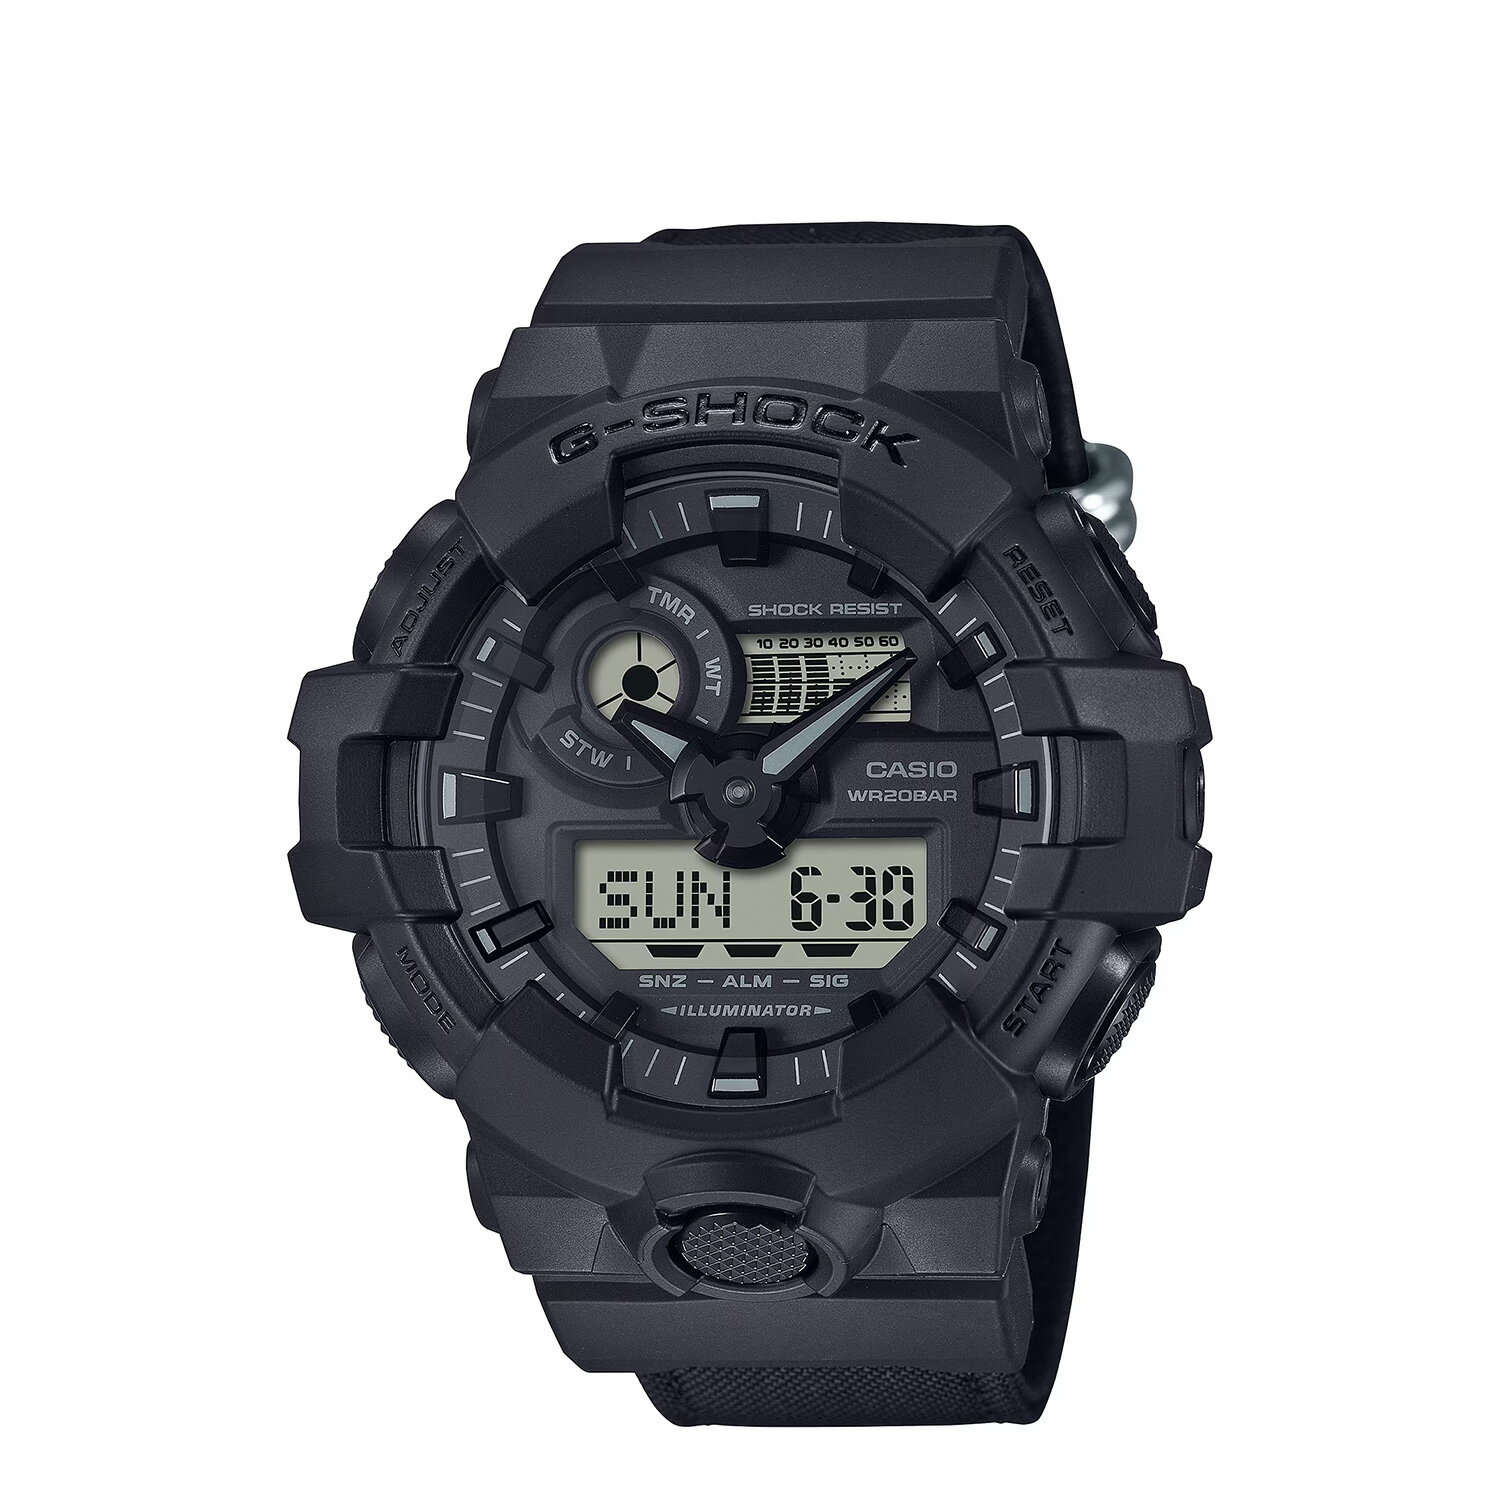 CASIO G-SHOCK GA-700 SERIES カシオ 腕時計 GA-700BCE-1AJF ジーショック Gショック G-ショック メンズ レディース ブラック 黒